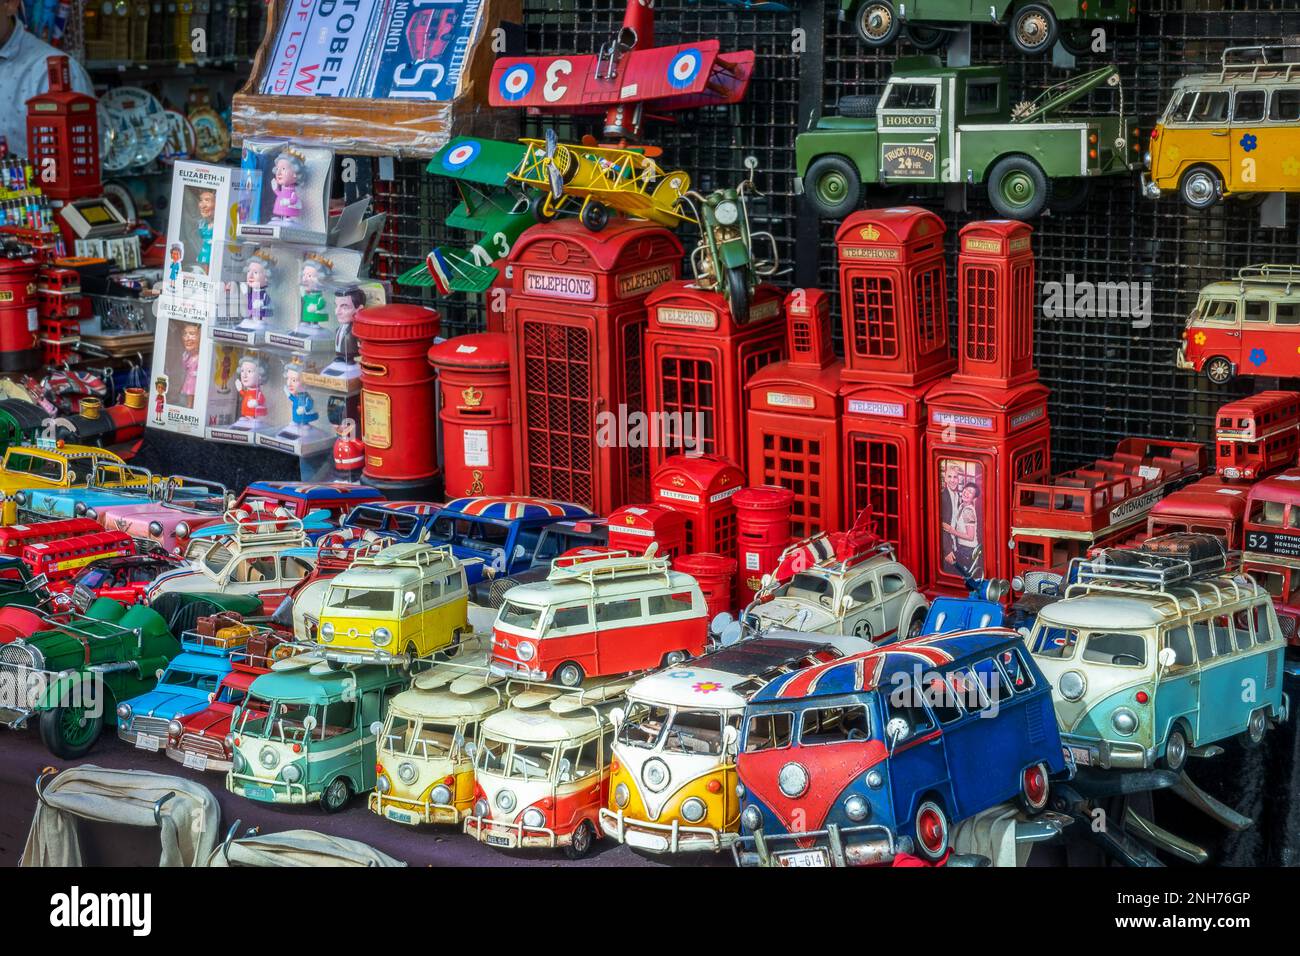 Souvenirs britanniques jouets et objets avec cabines téléphoniques, mini bus vintage et voitures au marché de Portobello à Londres, Royaume-Uni Banque D'Images